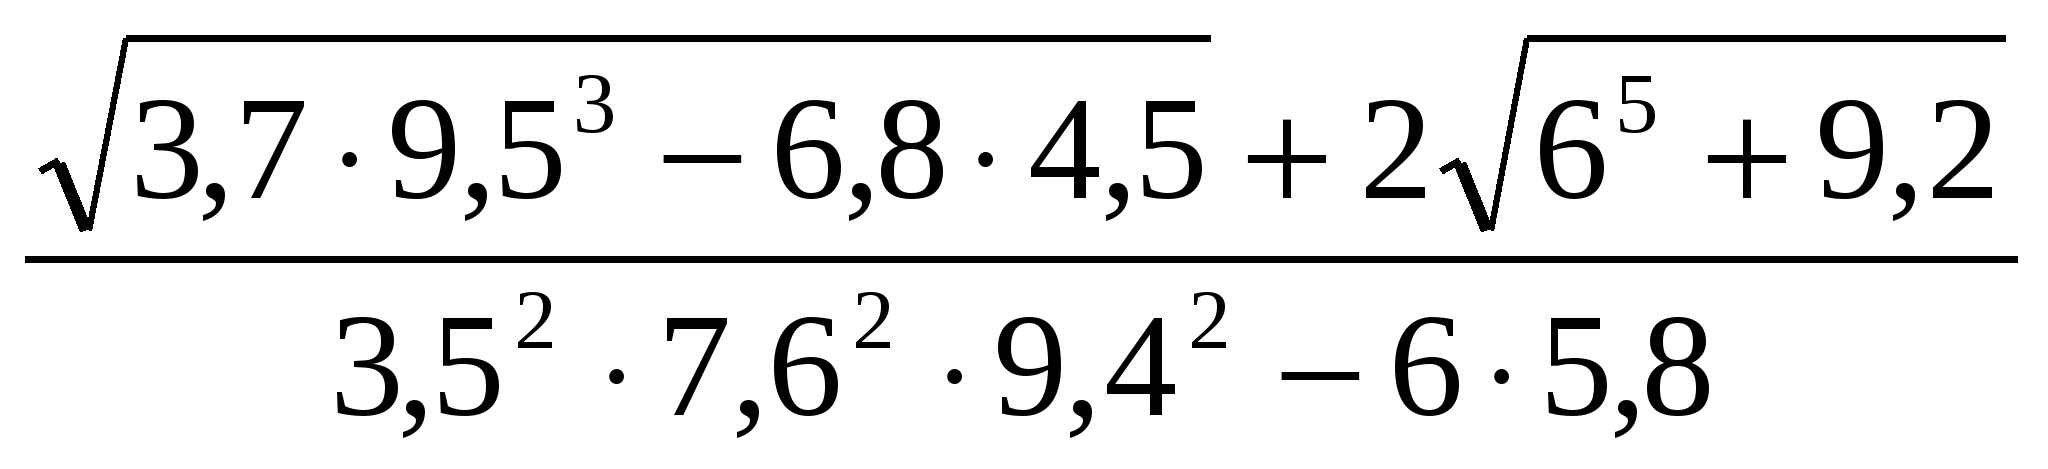 Правила записи арифметических выражений в алгоритмическом языке 8 класс